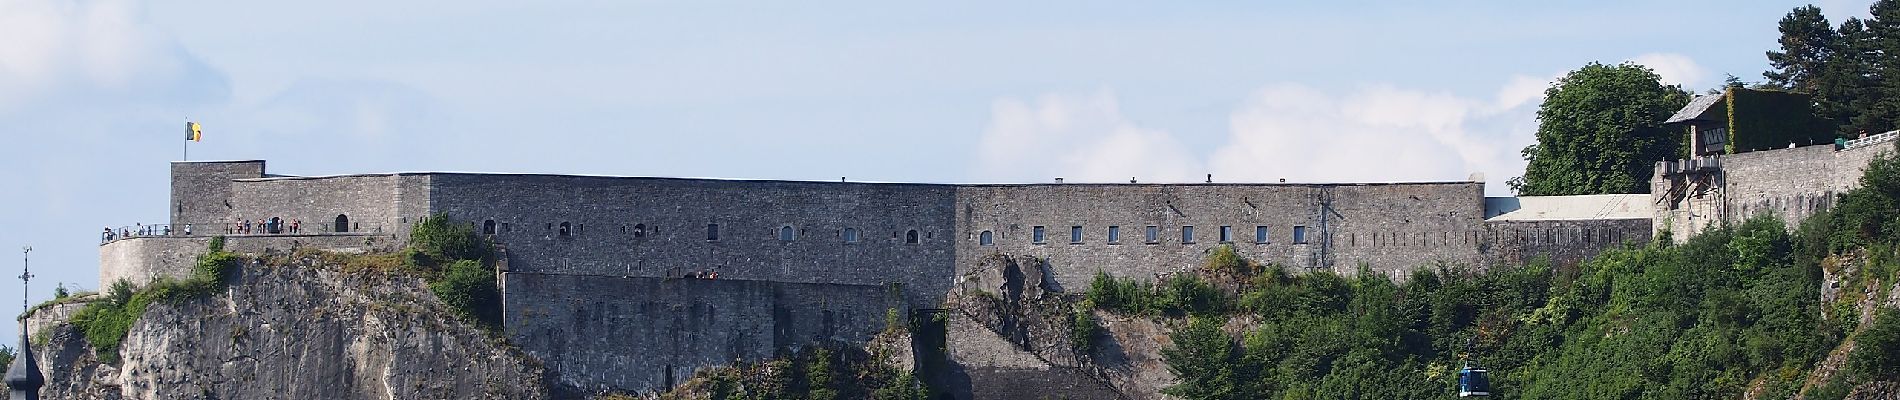 POI Dinant - Citadelle de Dinant - Photo